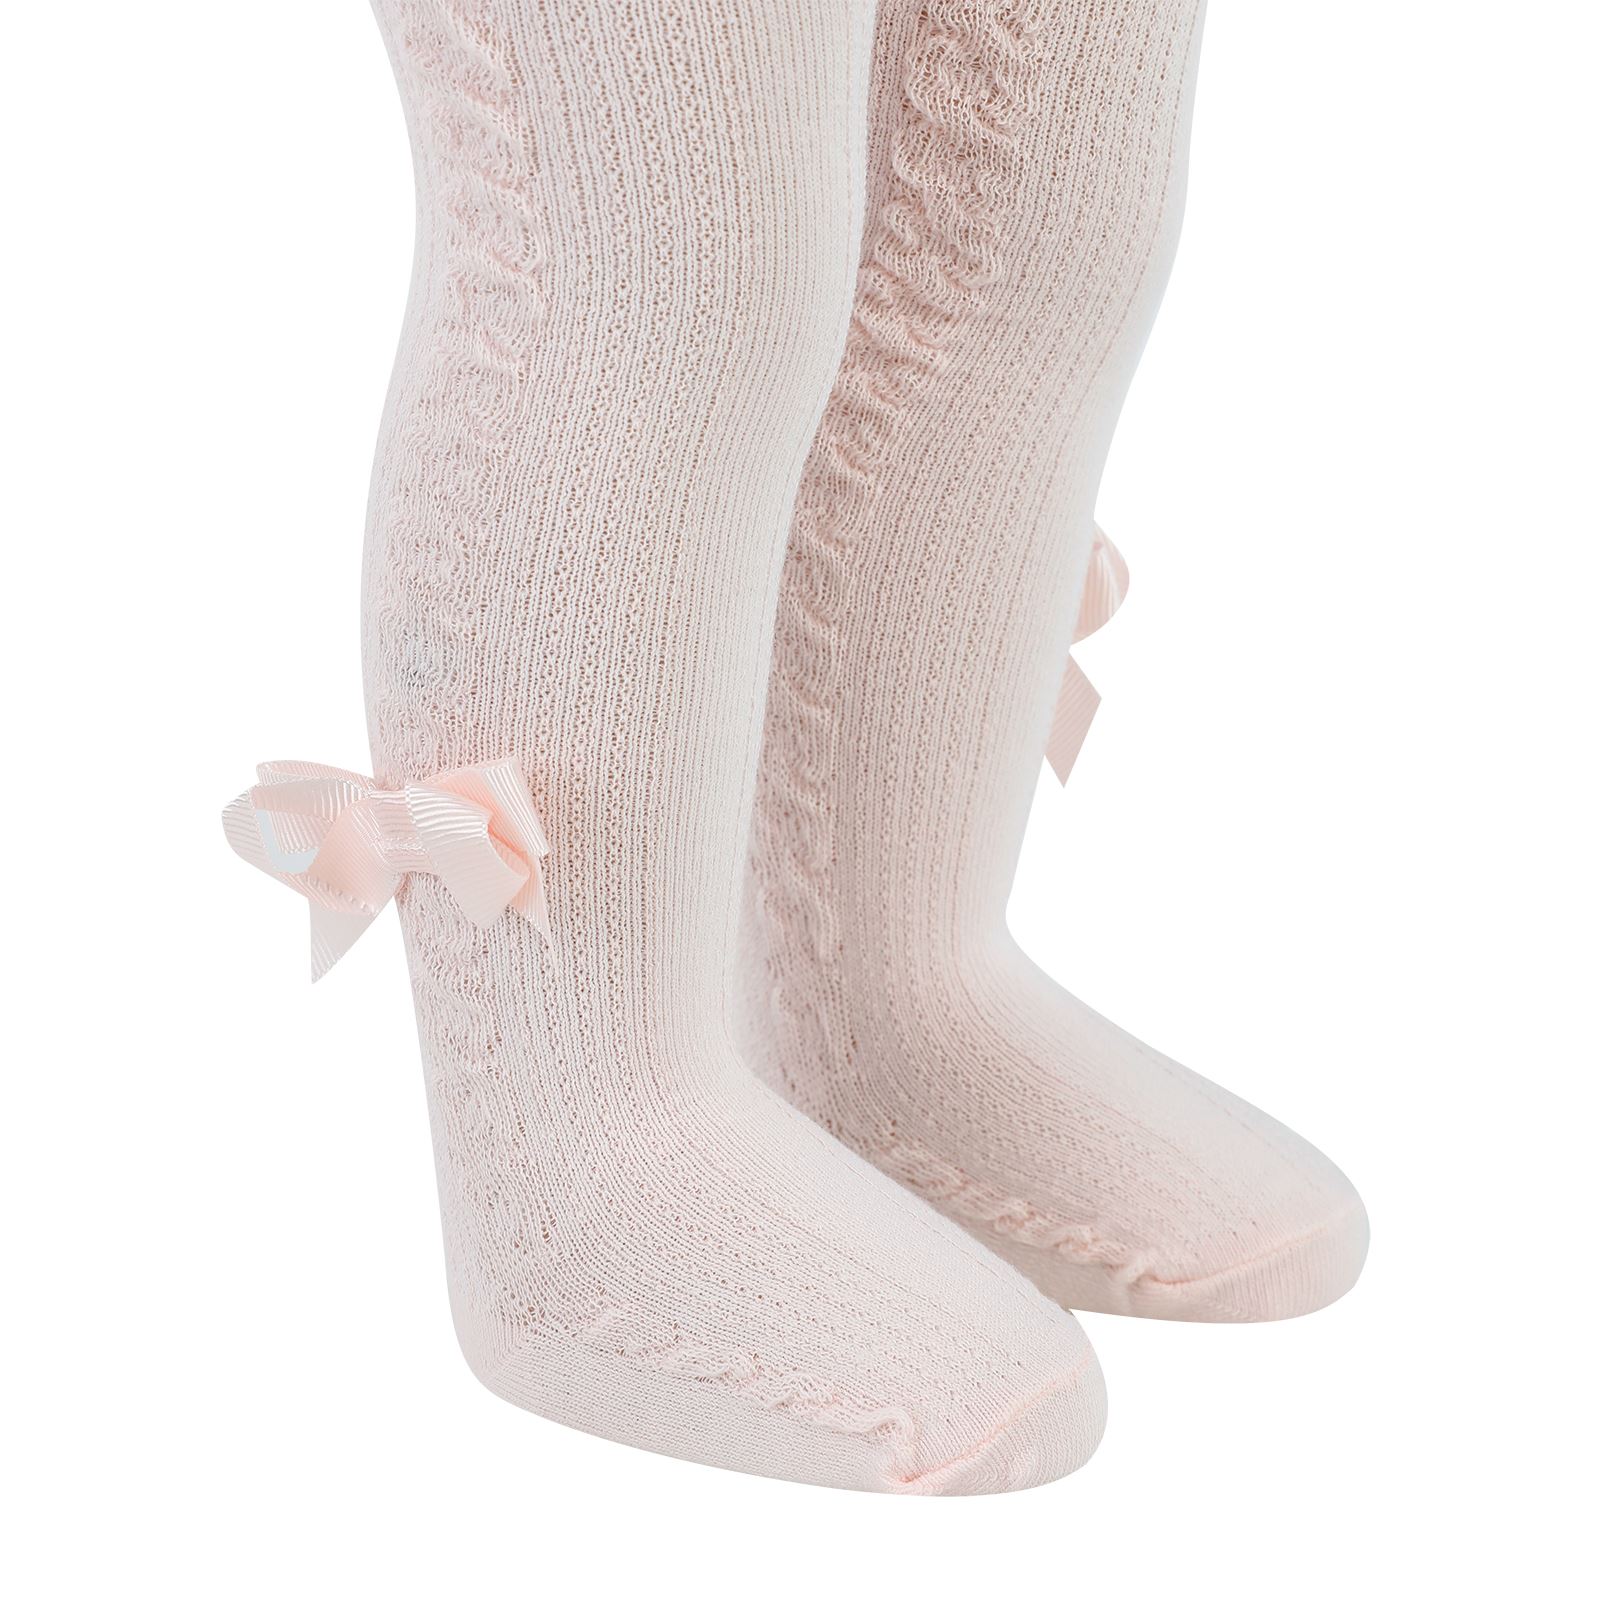 Artı Kız Bebek Külotlu Çorap 0-12 Ay Pembe